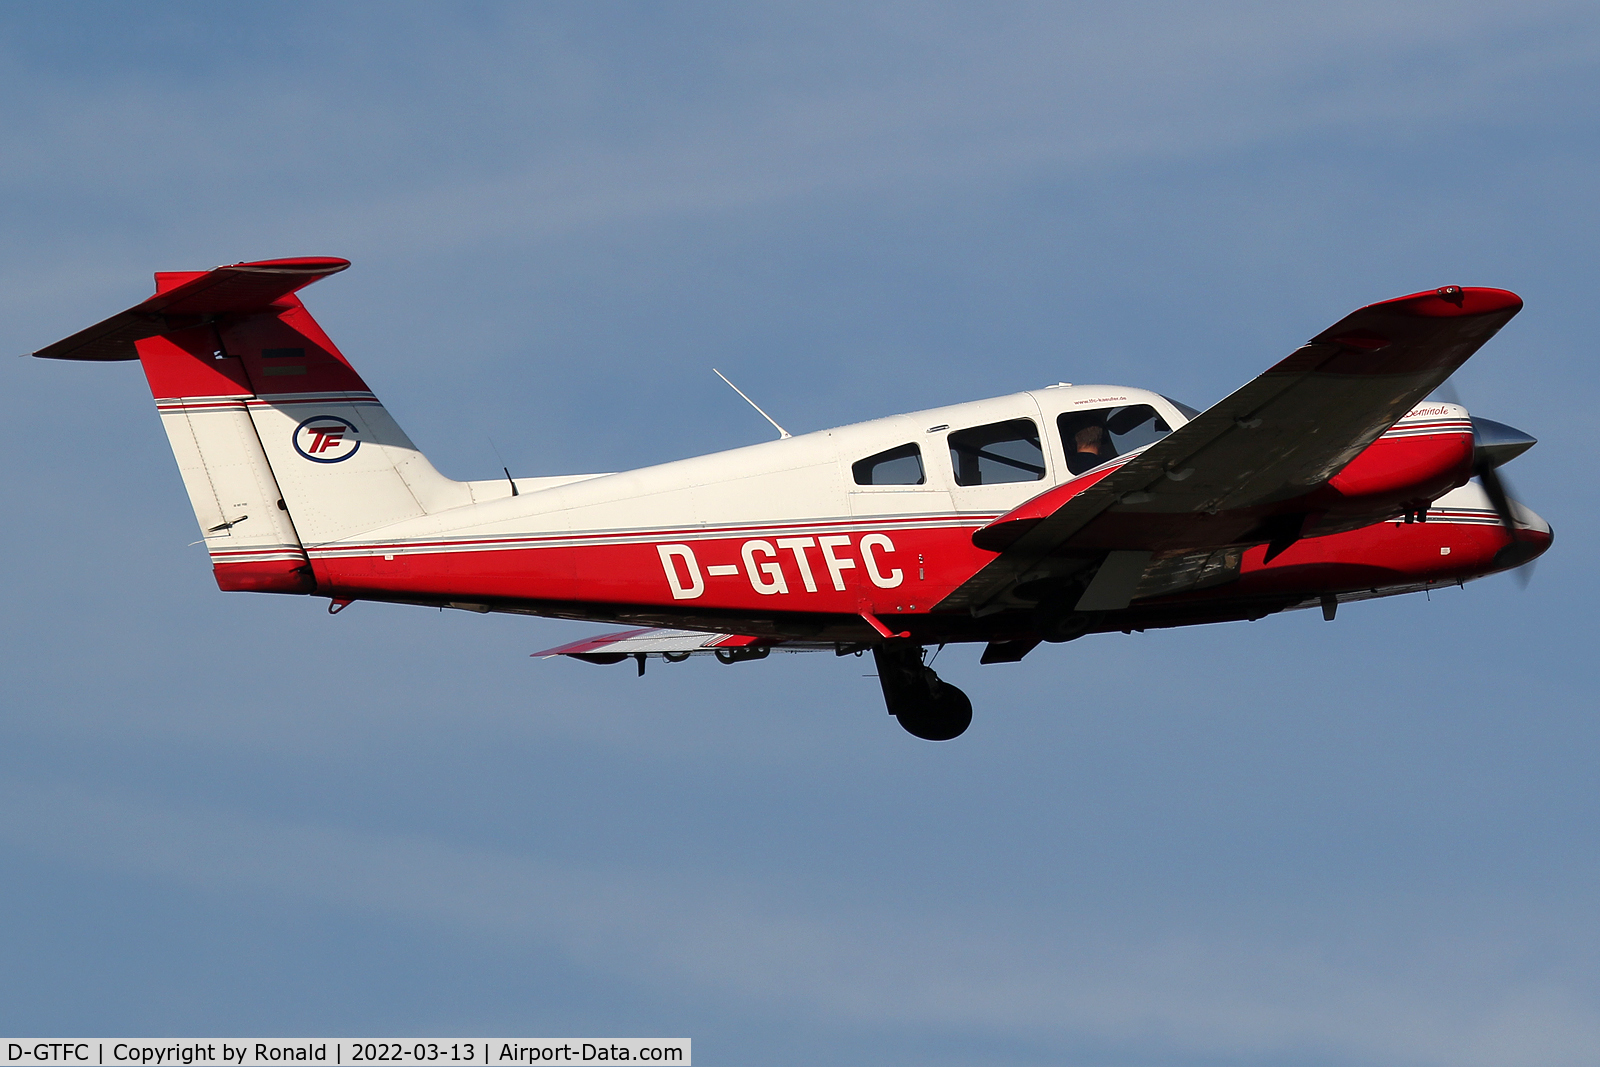 D-GTFC, 2007 Piper PA-44-180 Seminole C/N 44-96238, at edls